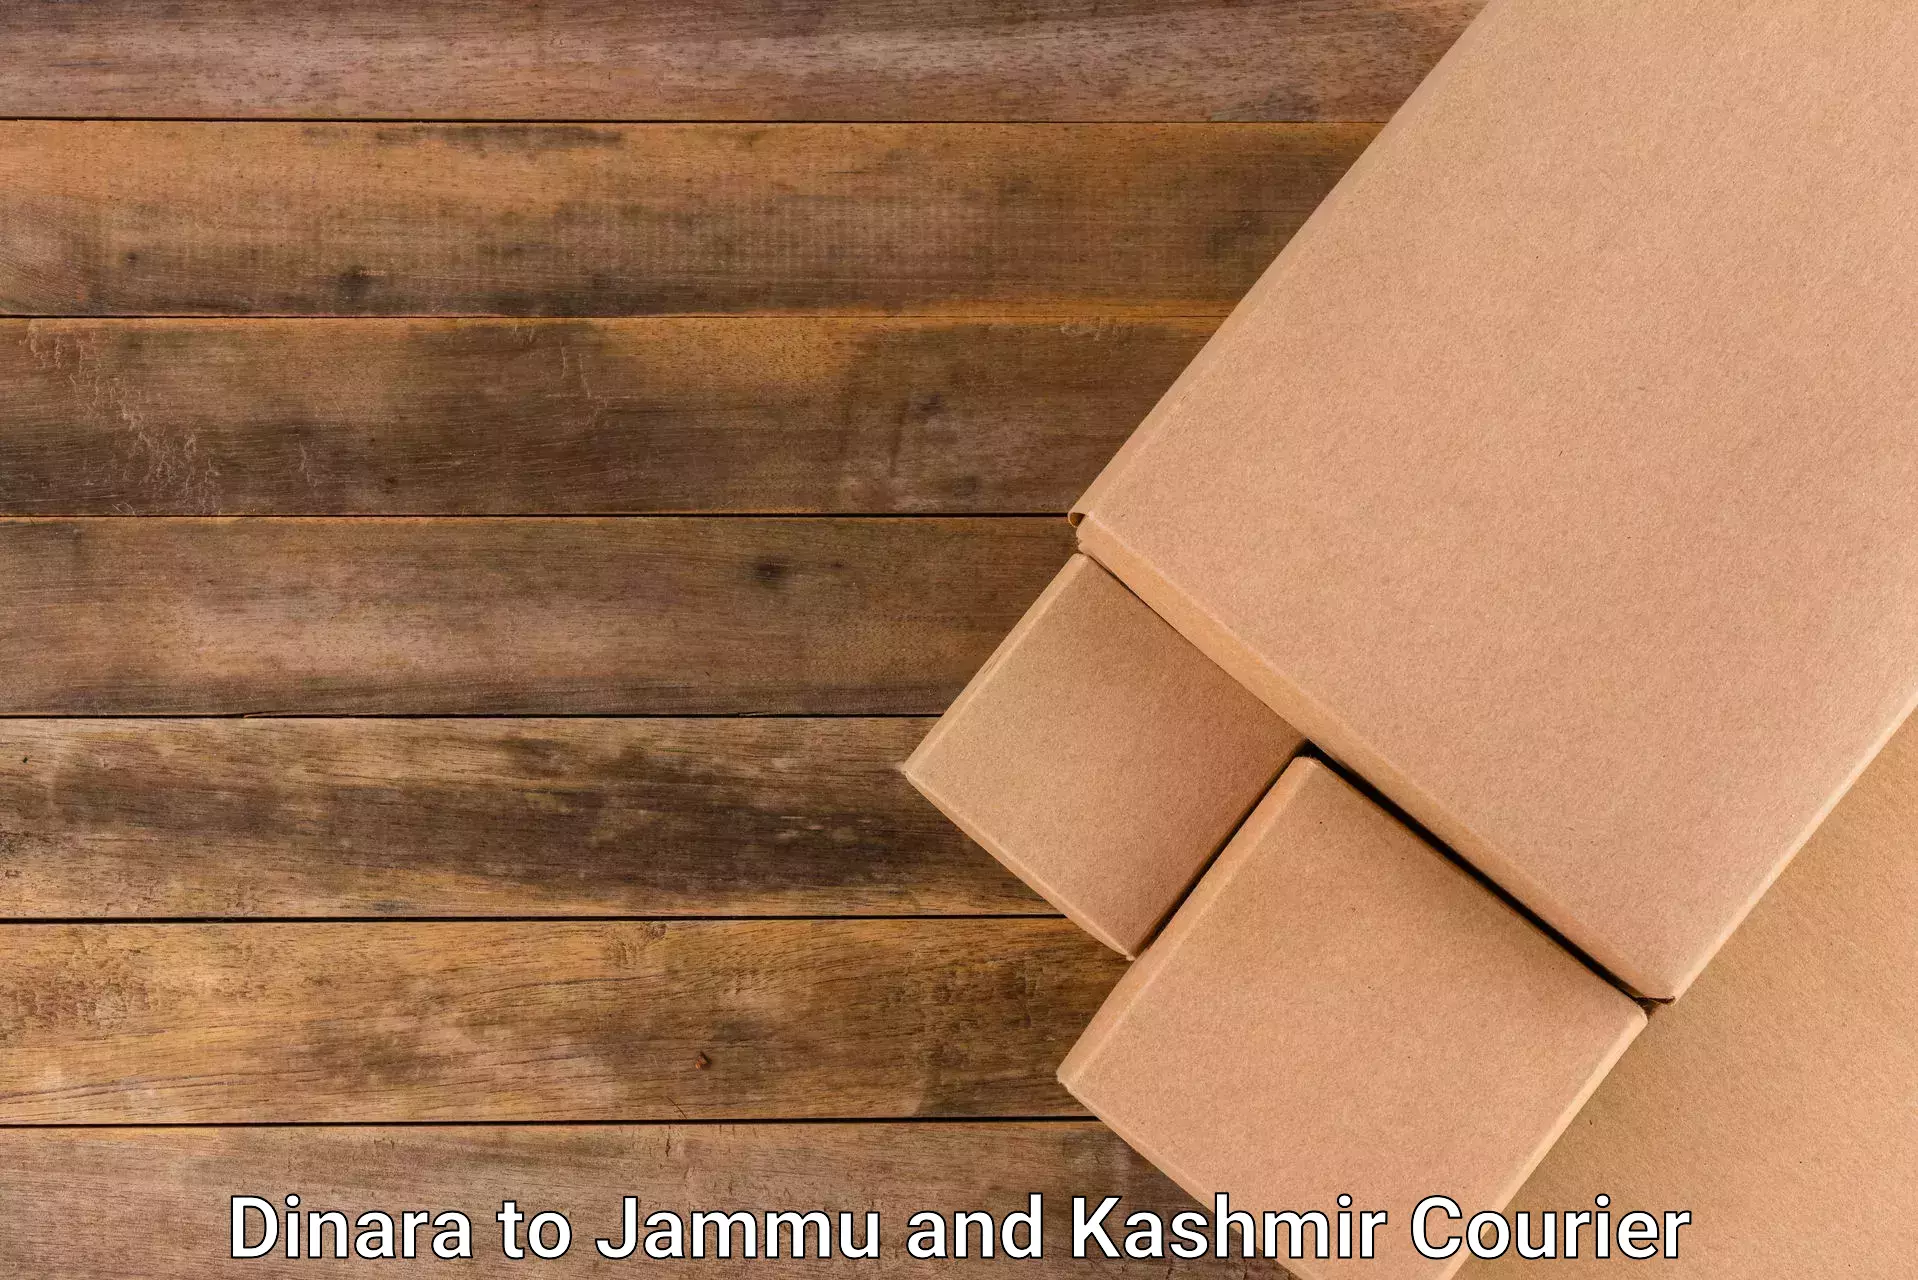 Logistics and distribution Dinara to Jammu and Kashmir